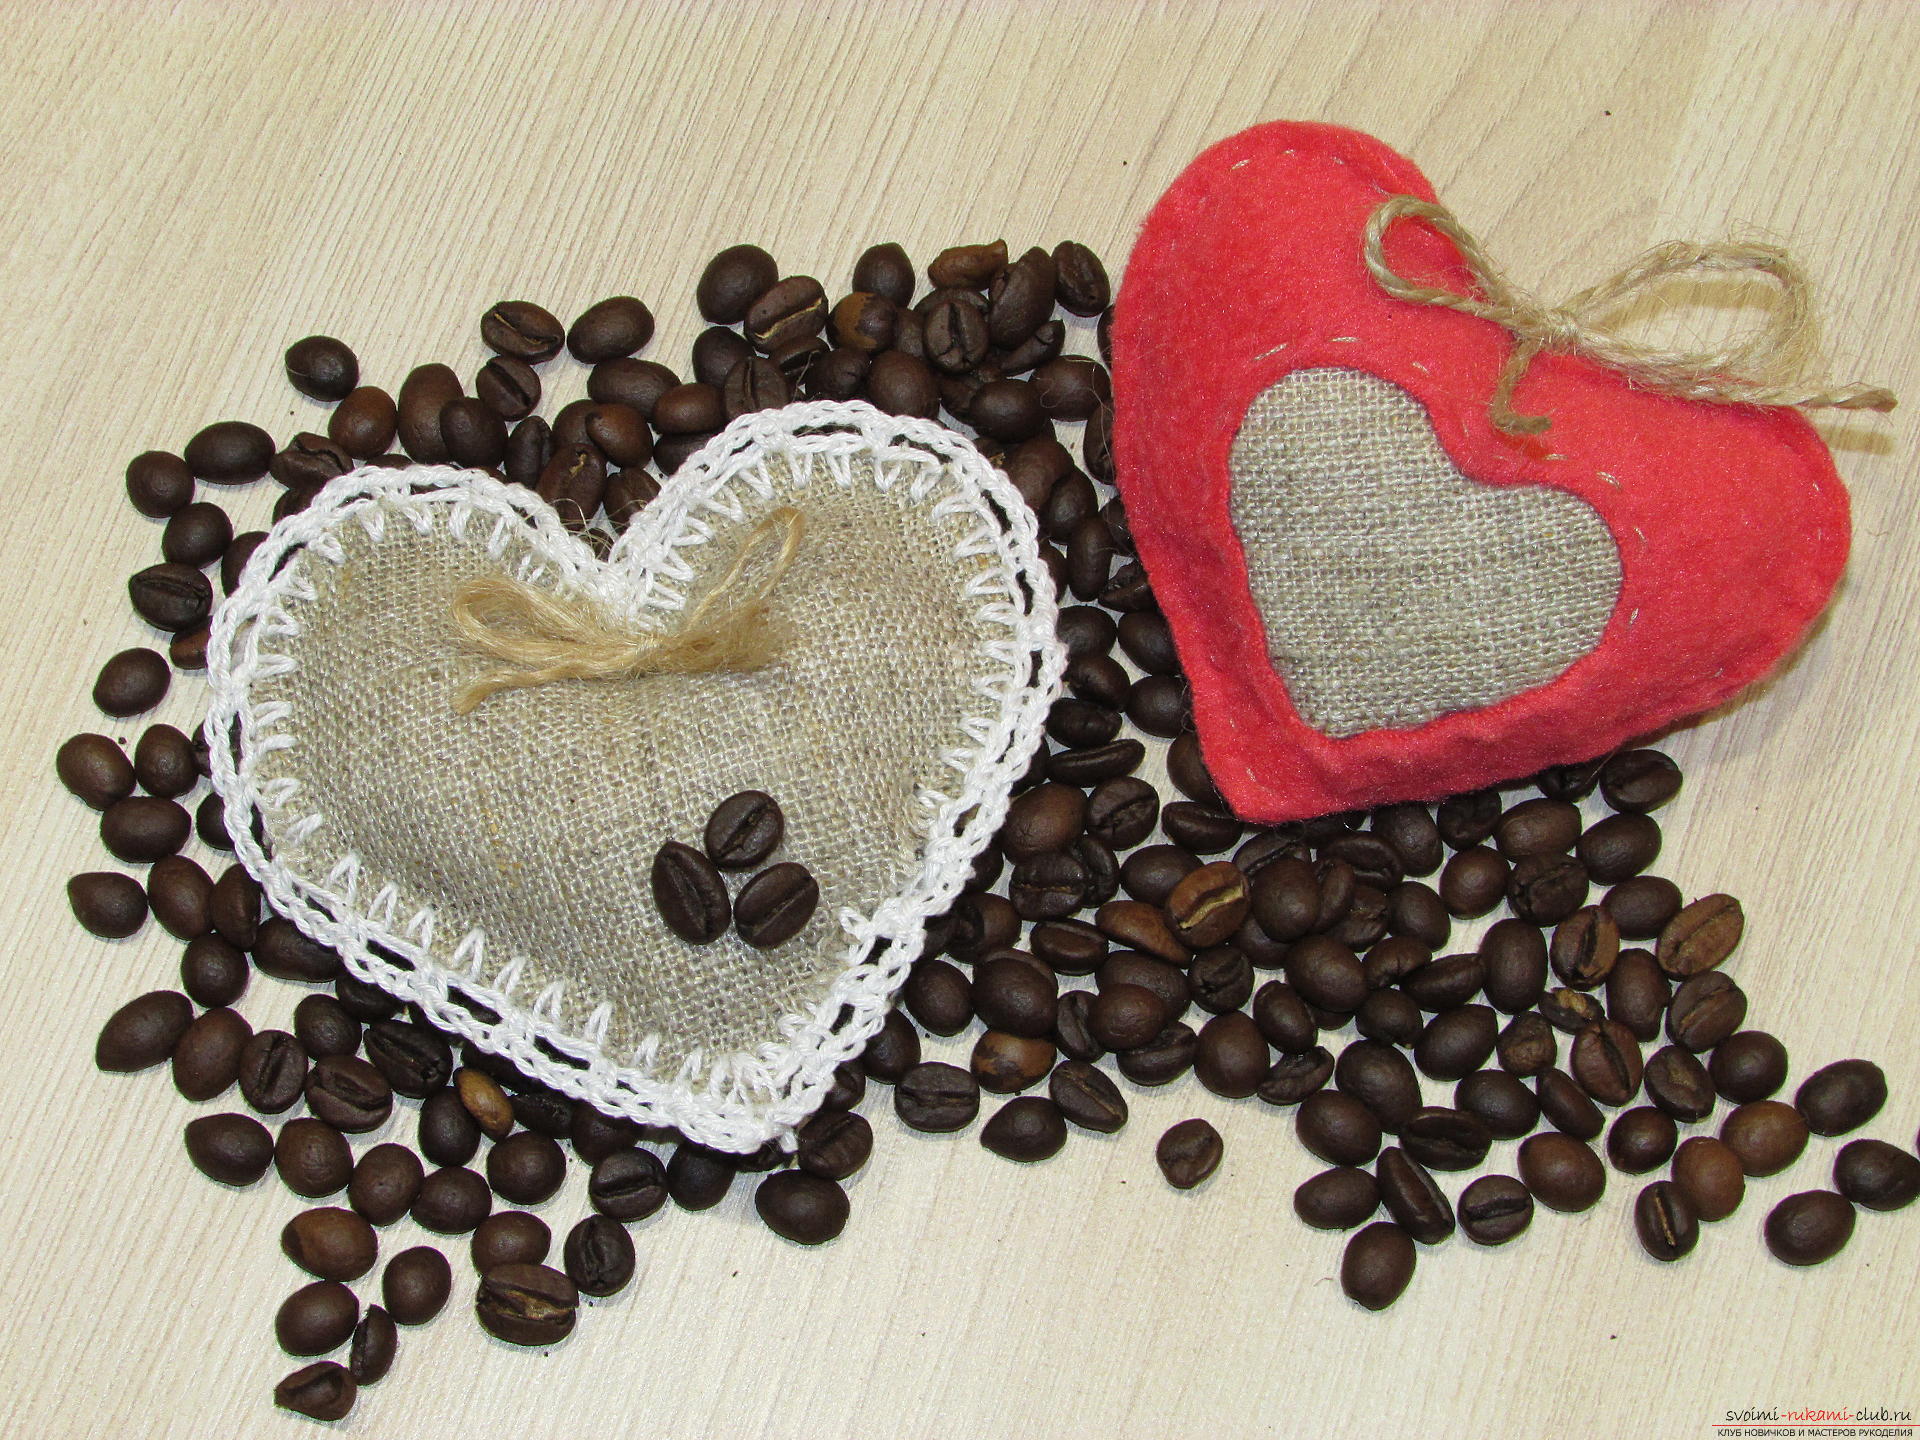 Dieser Meisterkurs wird Ihnen beibringen, wie man ein Artefakt aus Kaffeebohnen herstellt - ein aromatisches Kissen